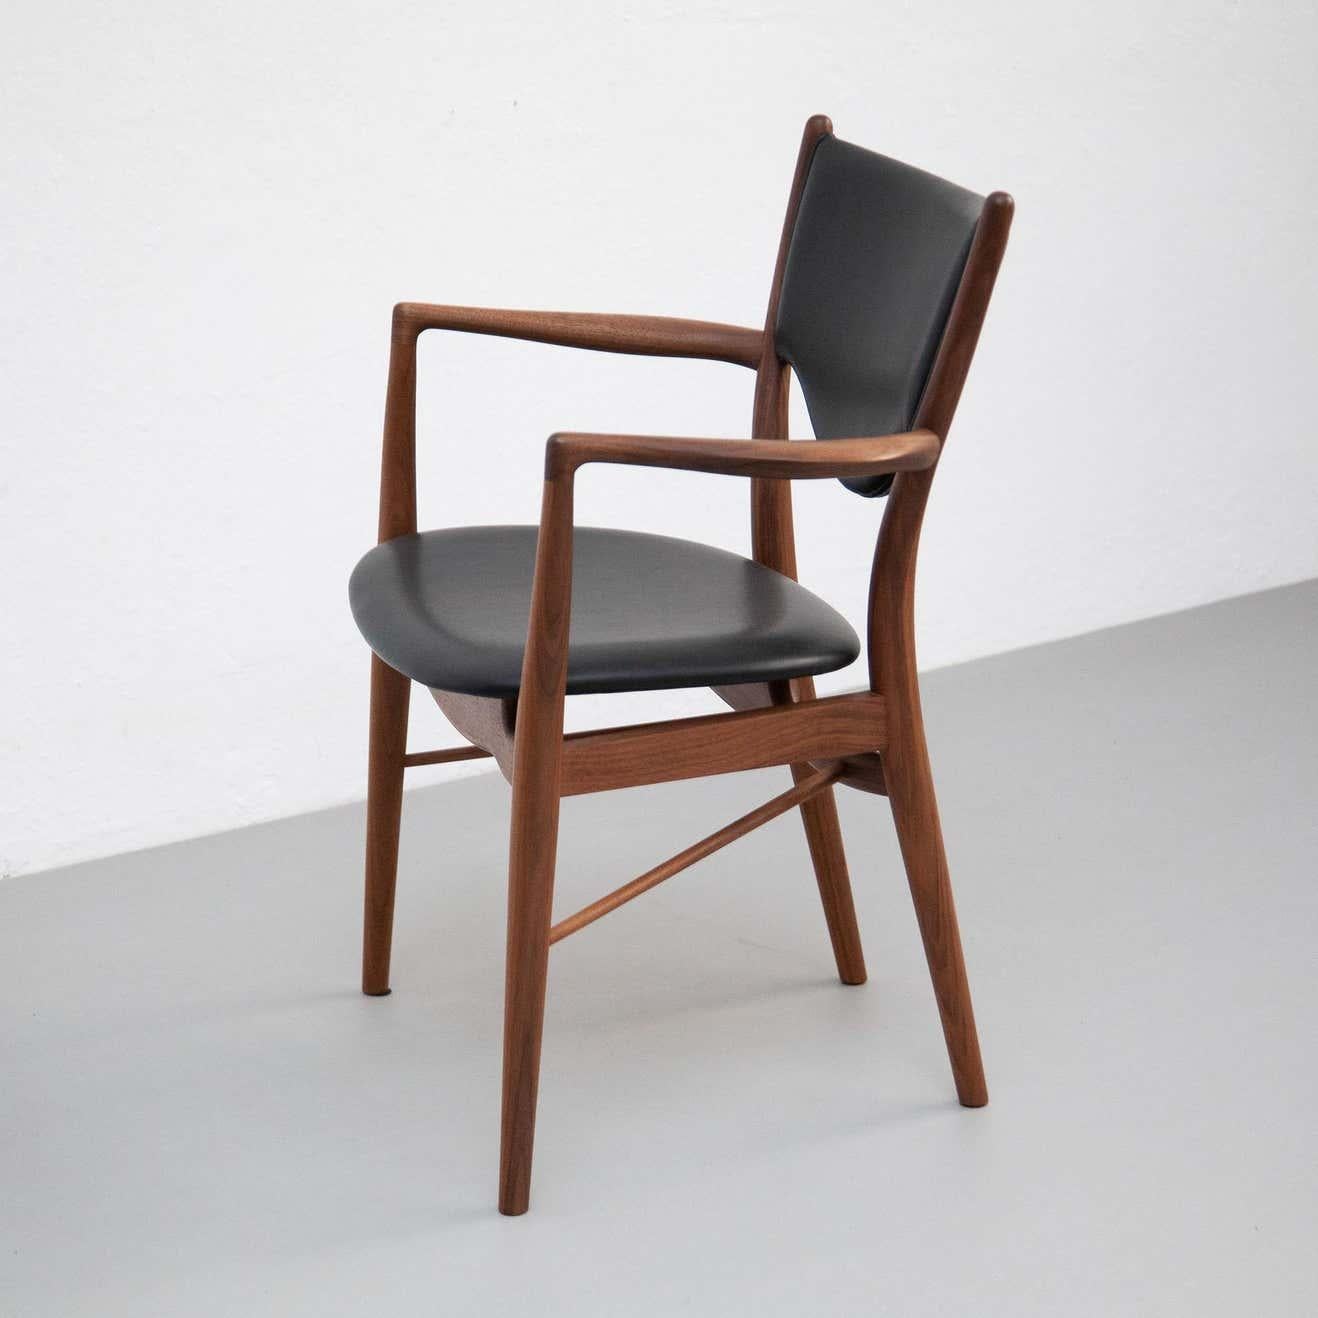 Stuhl von Finn Juhl aus dem Jahr 1946, neu aufgelegt im Jahr 2018.
Hergestellt von House of Finn Juhls in Dänemark.

Dieser Stuhl ist ein Beispiel für Finn Juhls schönstes Werk. Er wurde ursprünglich 1946 für die Ausstellung der Copenhagen